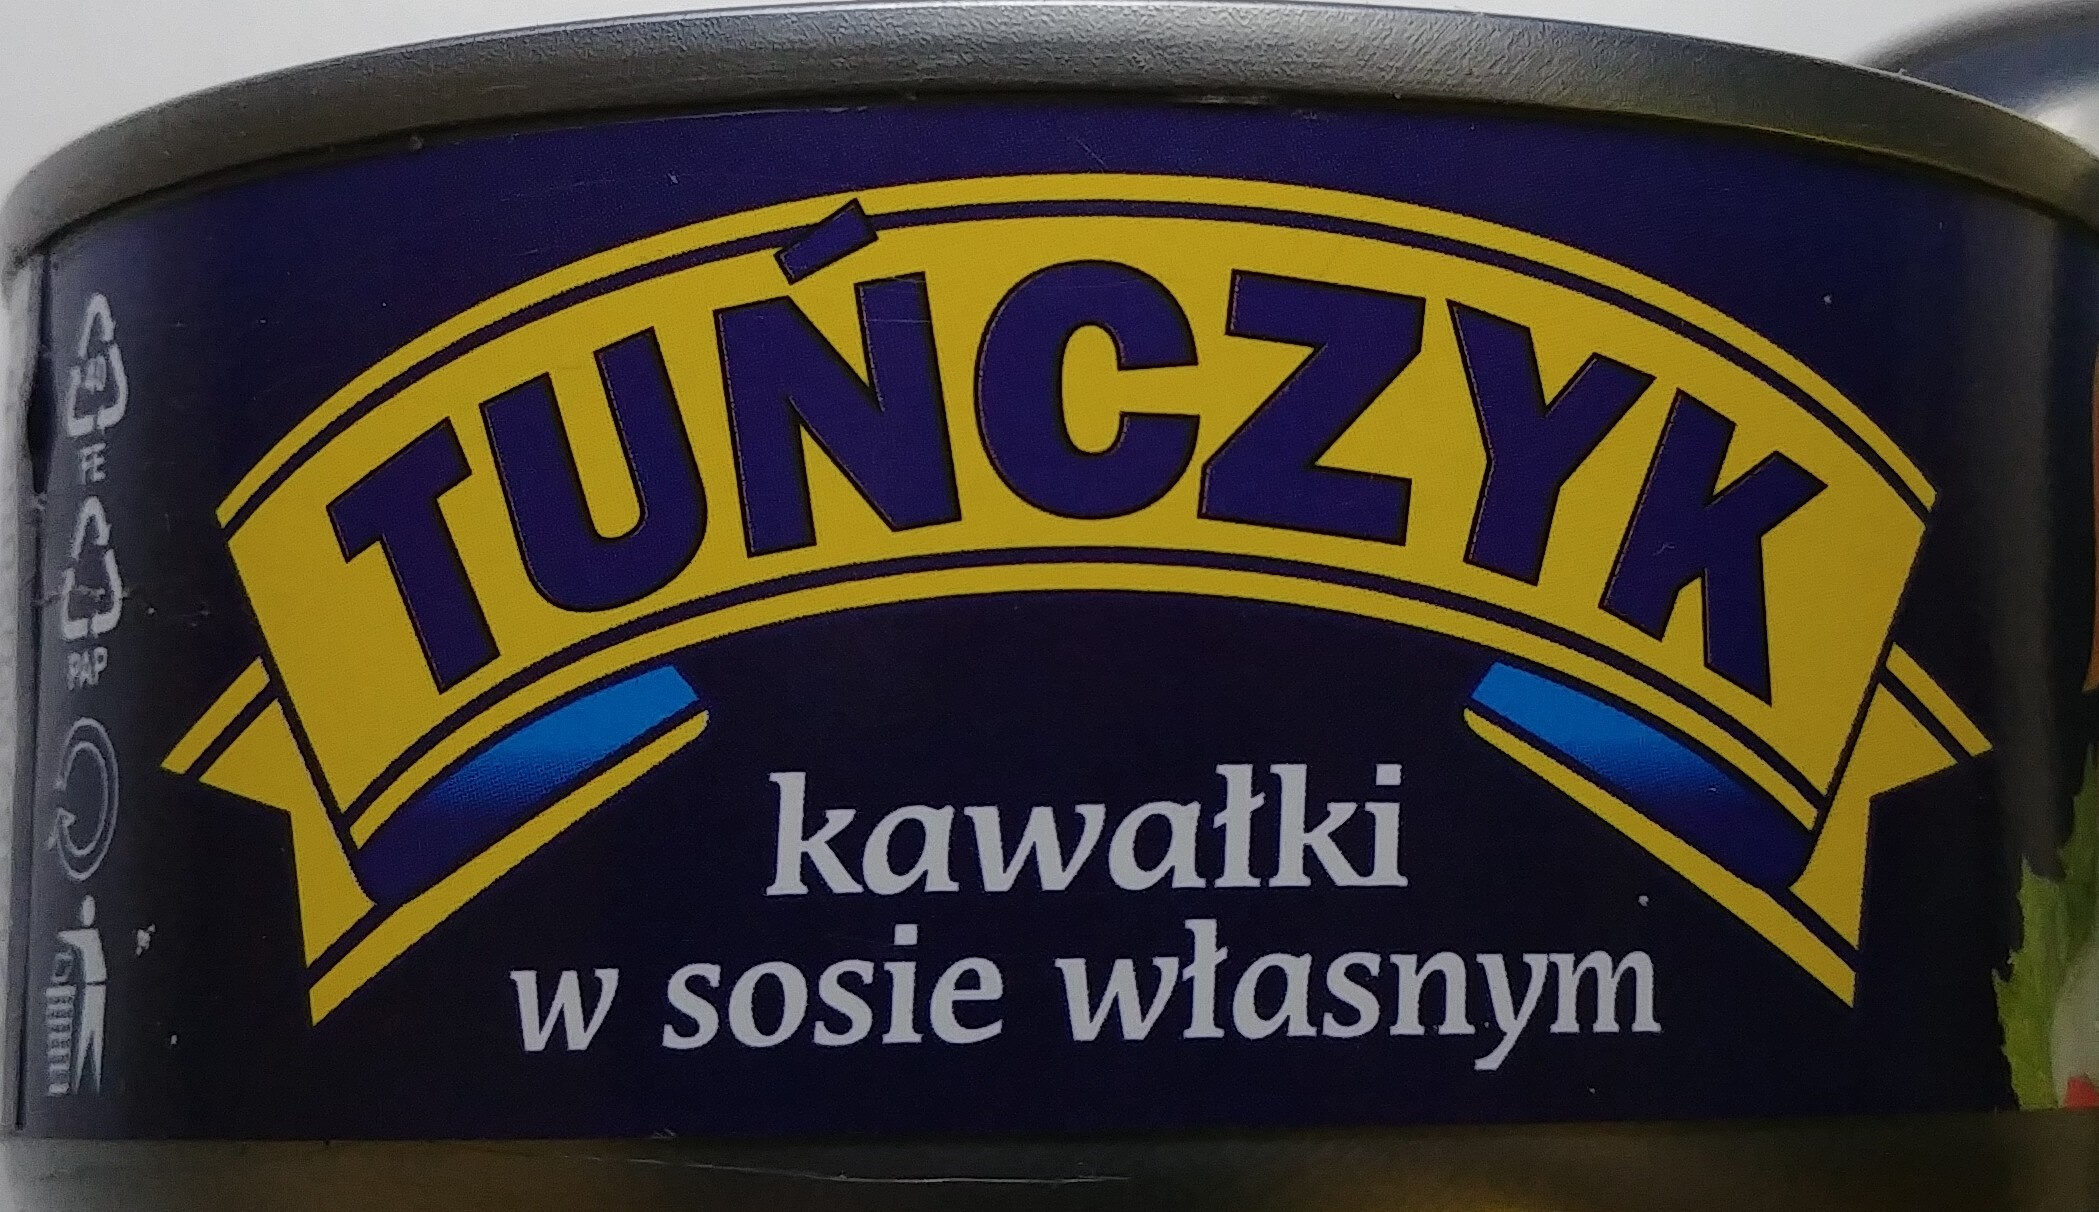 Tuńczyk kawałki w sosie własnym. - Product - pl